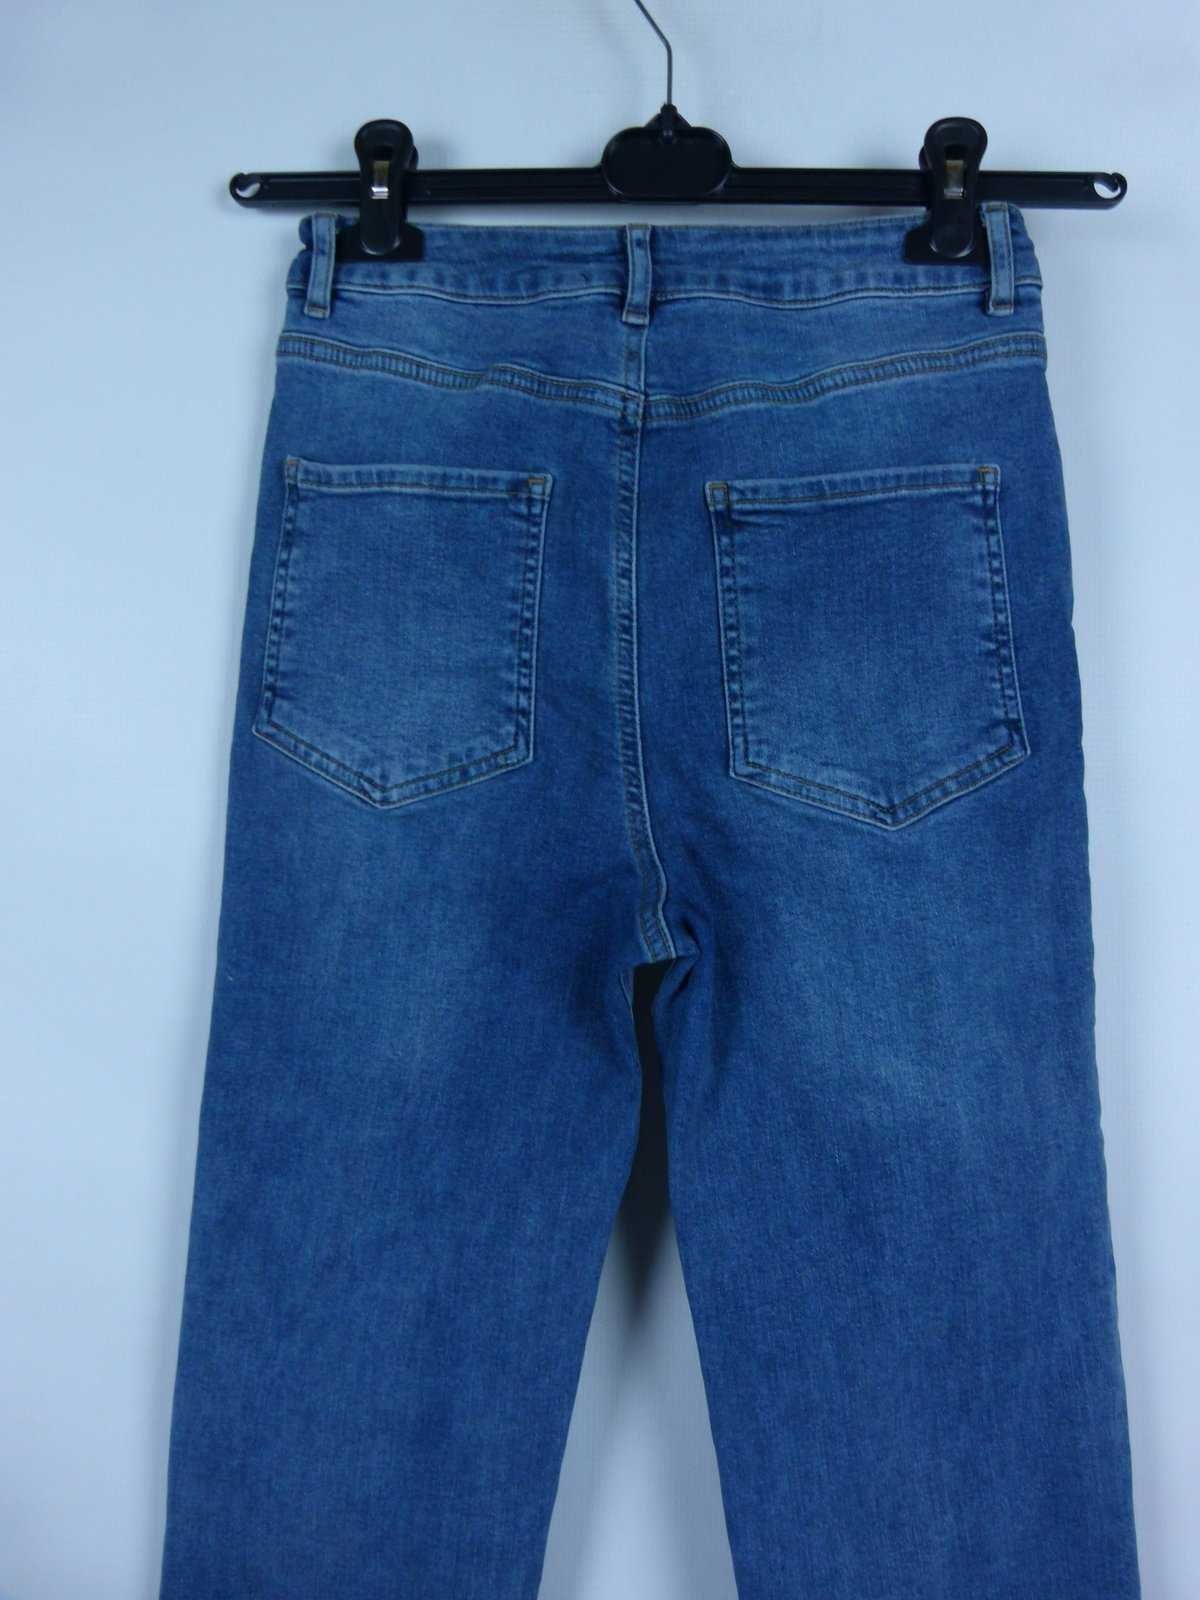 ASOS spodnie jeans wysoki stan proste nogawki 25 / 32